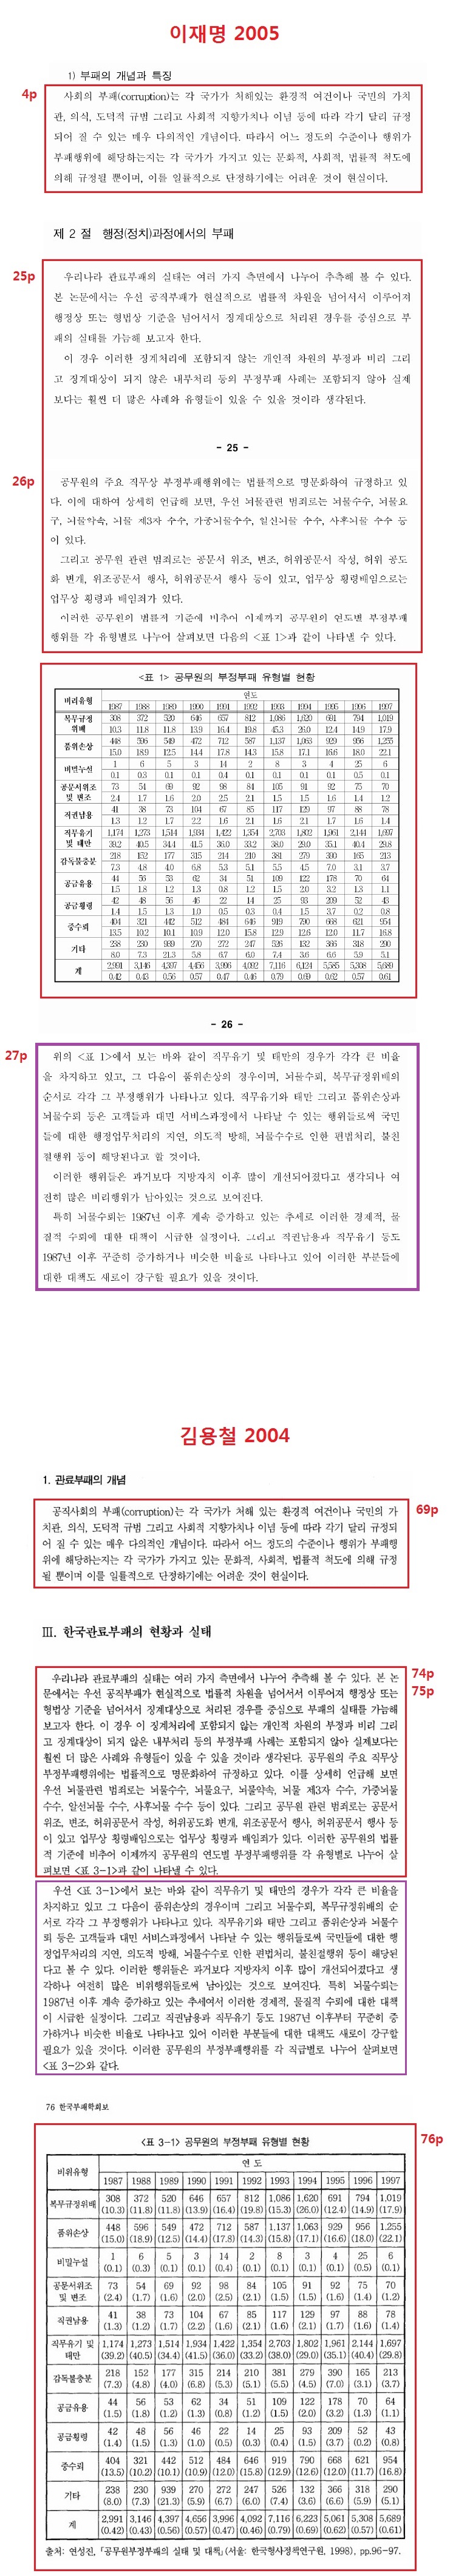 이재명(2005)이 김용철(2004)을 표절한 혐의 1